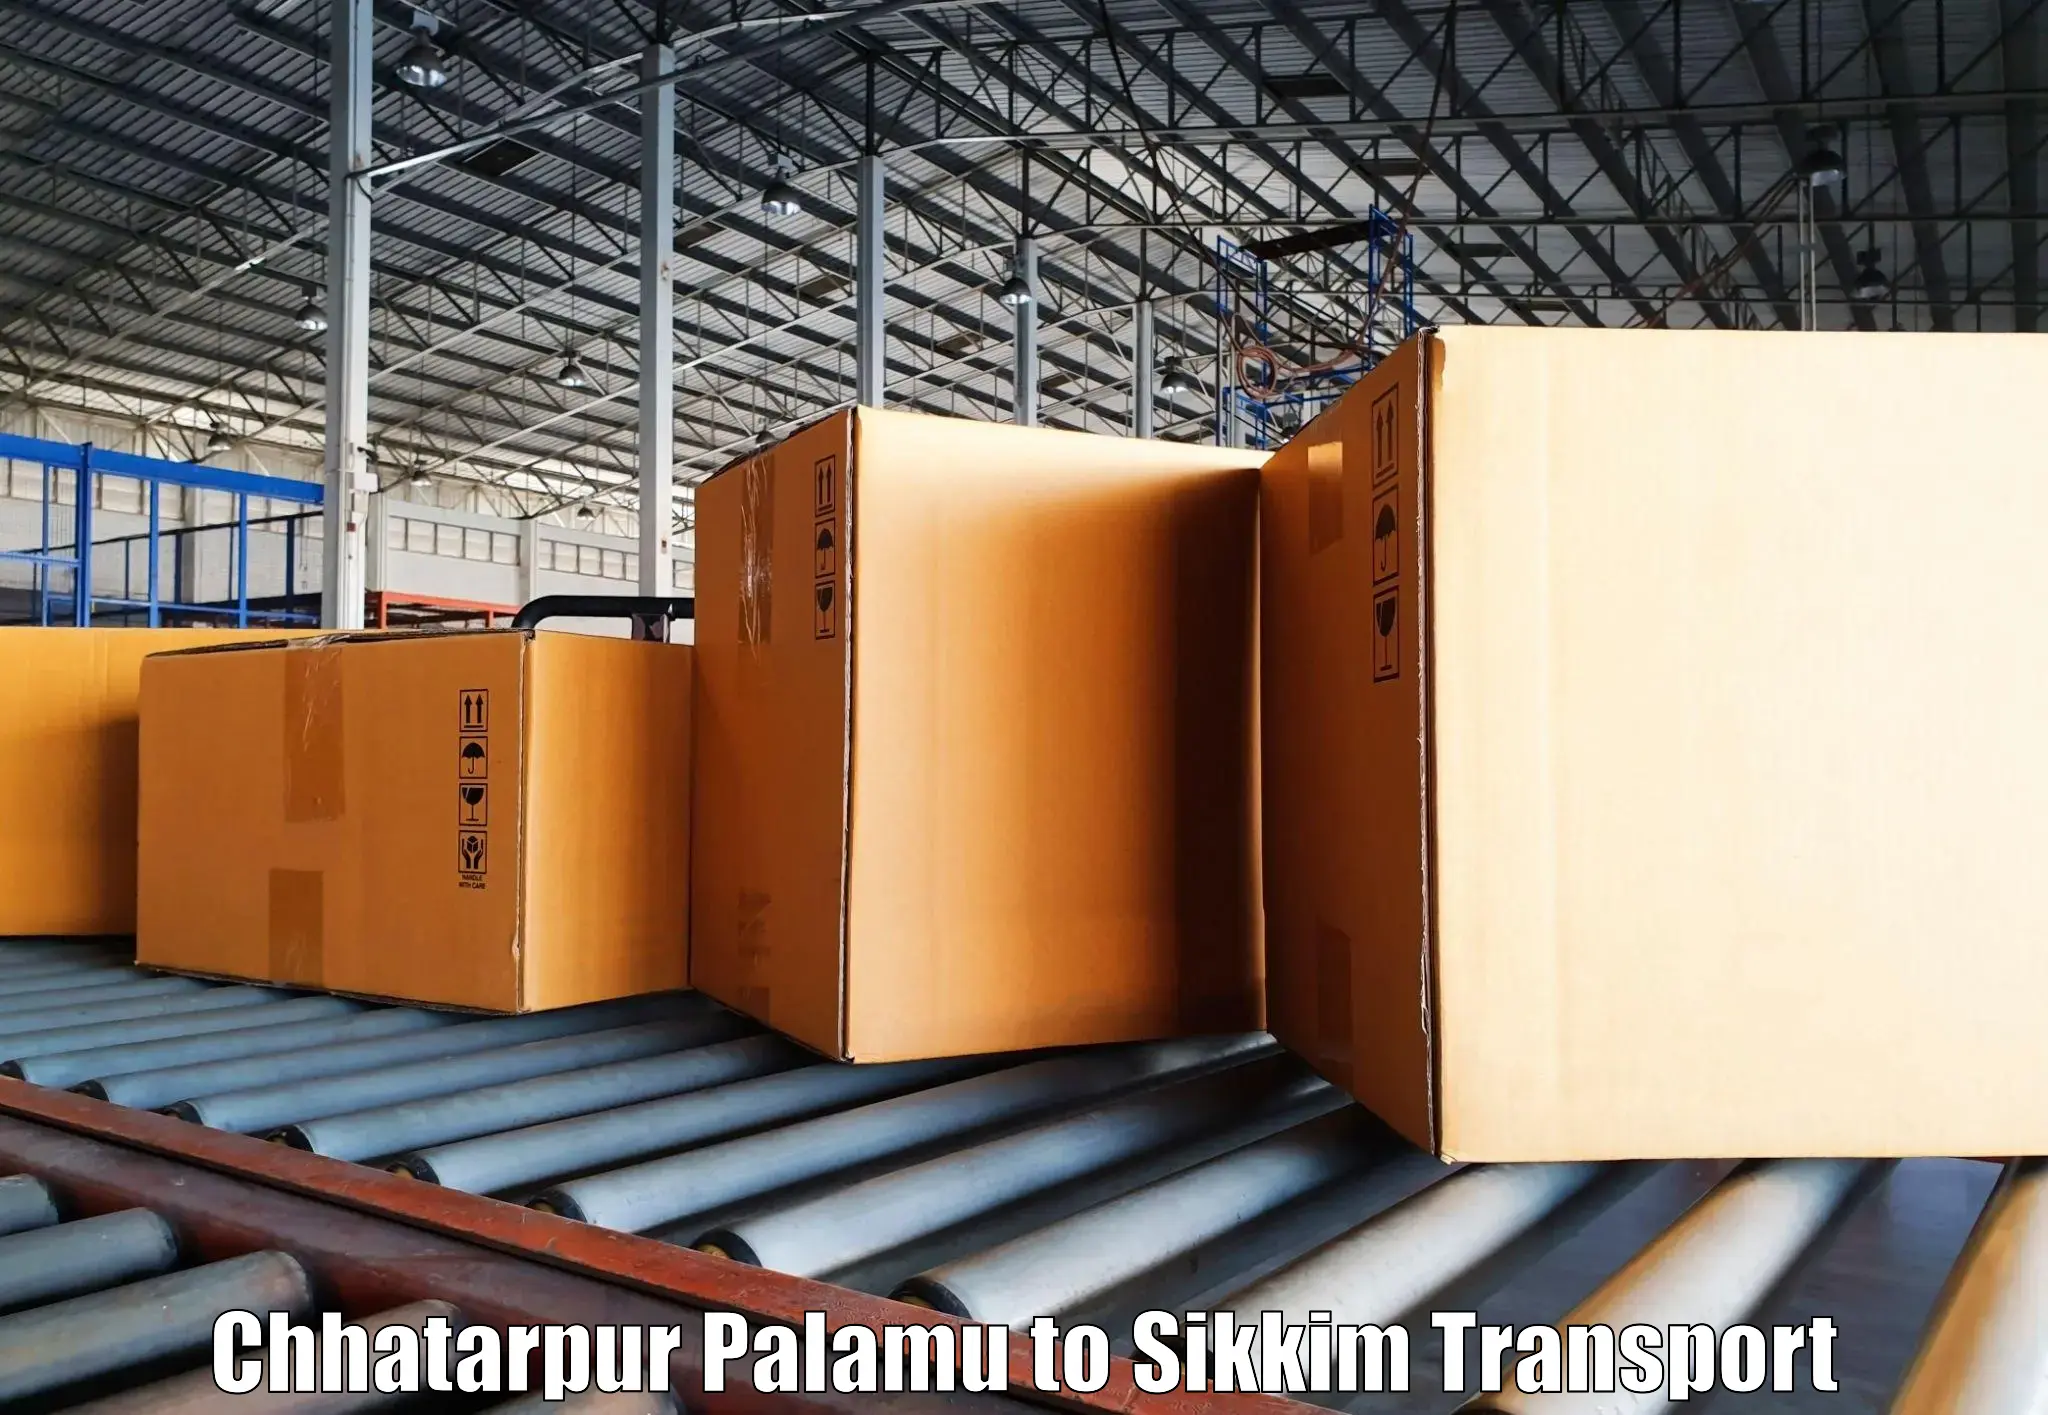 Online transport booking Chhatarpur Palamu to Jorethang